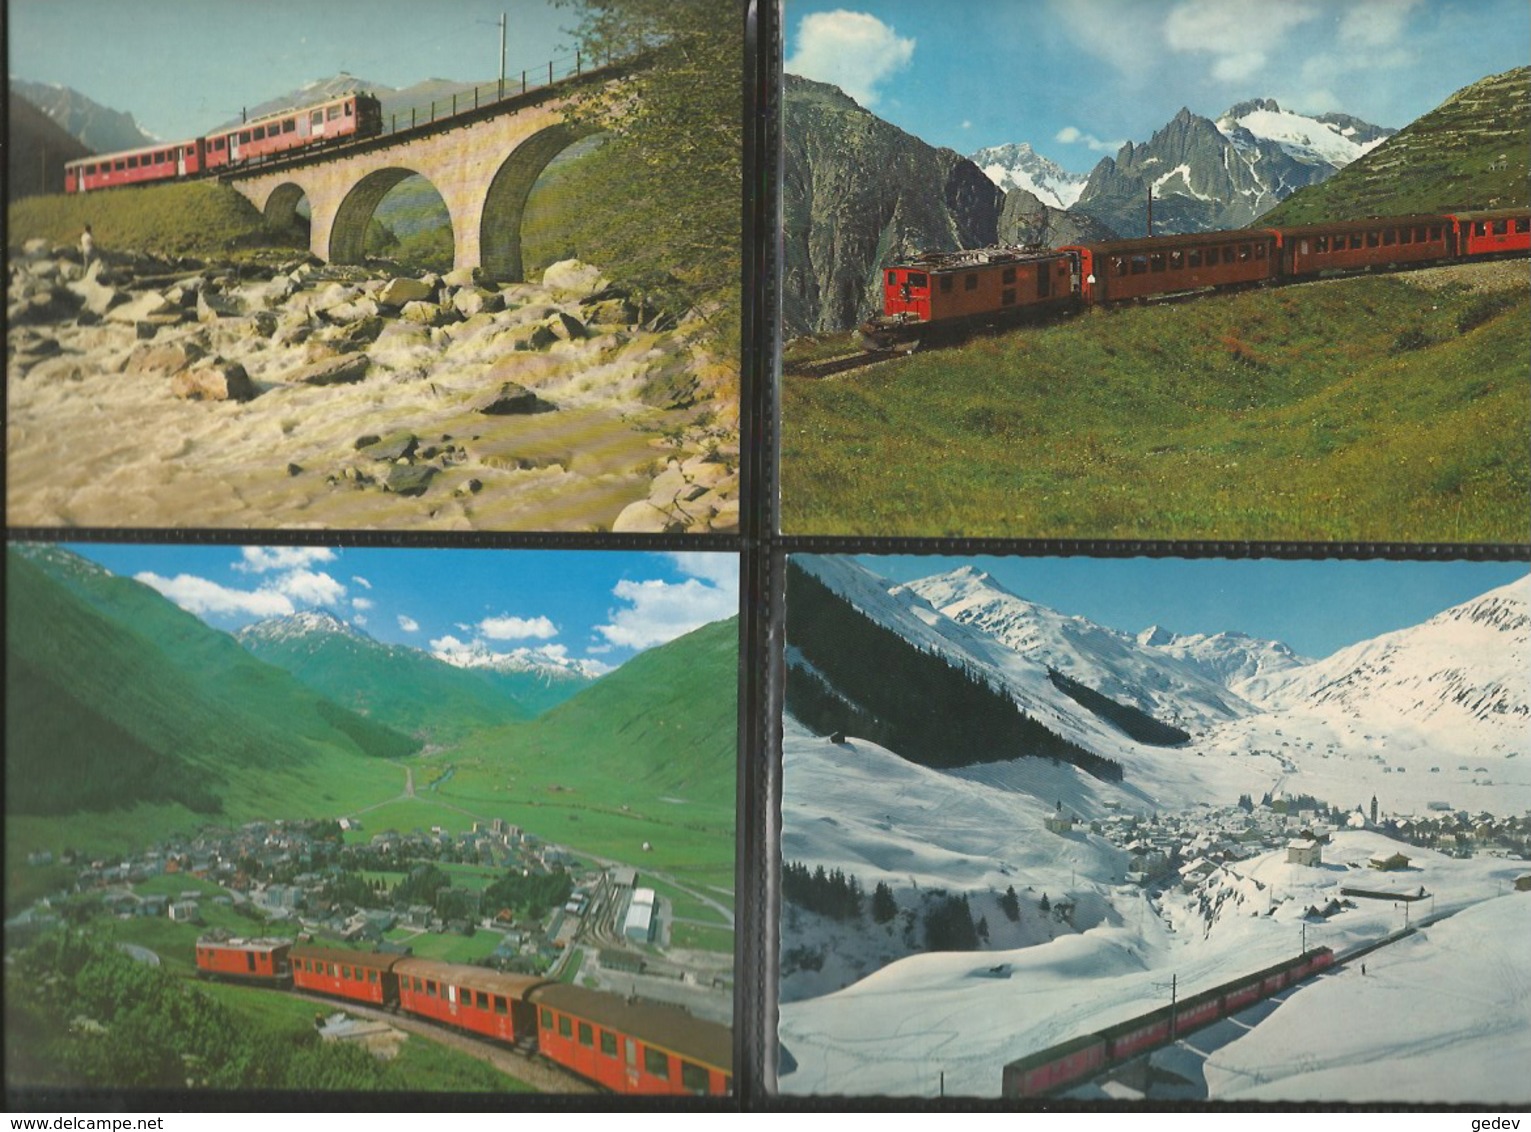 Chemin de Fer Zermatt - St Moritz, Furka-Oberalp-Bahn, Lot de 84 cartes couleurs modernes (3)